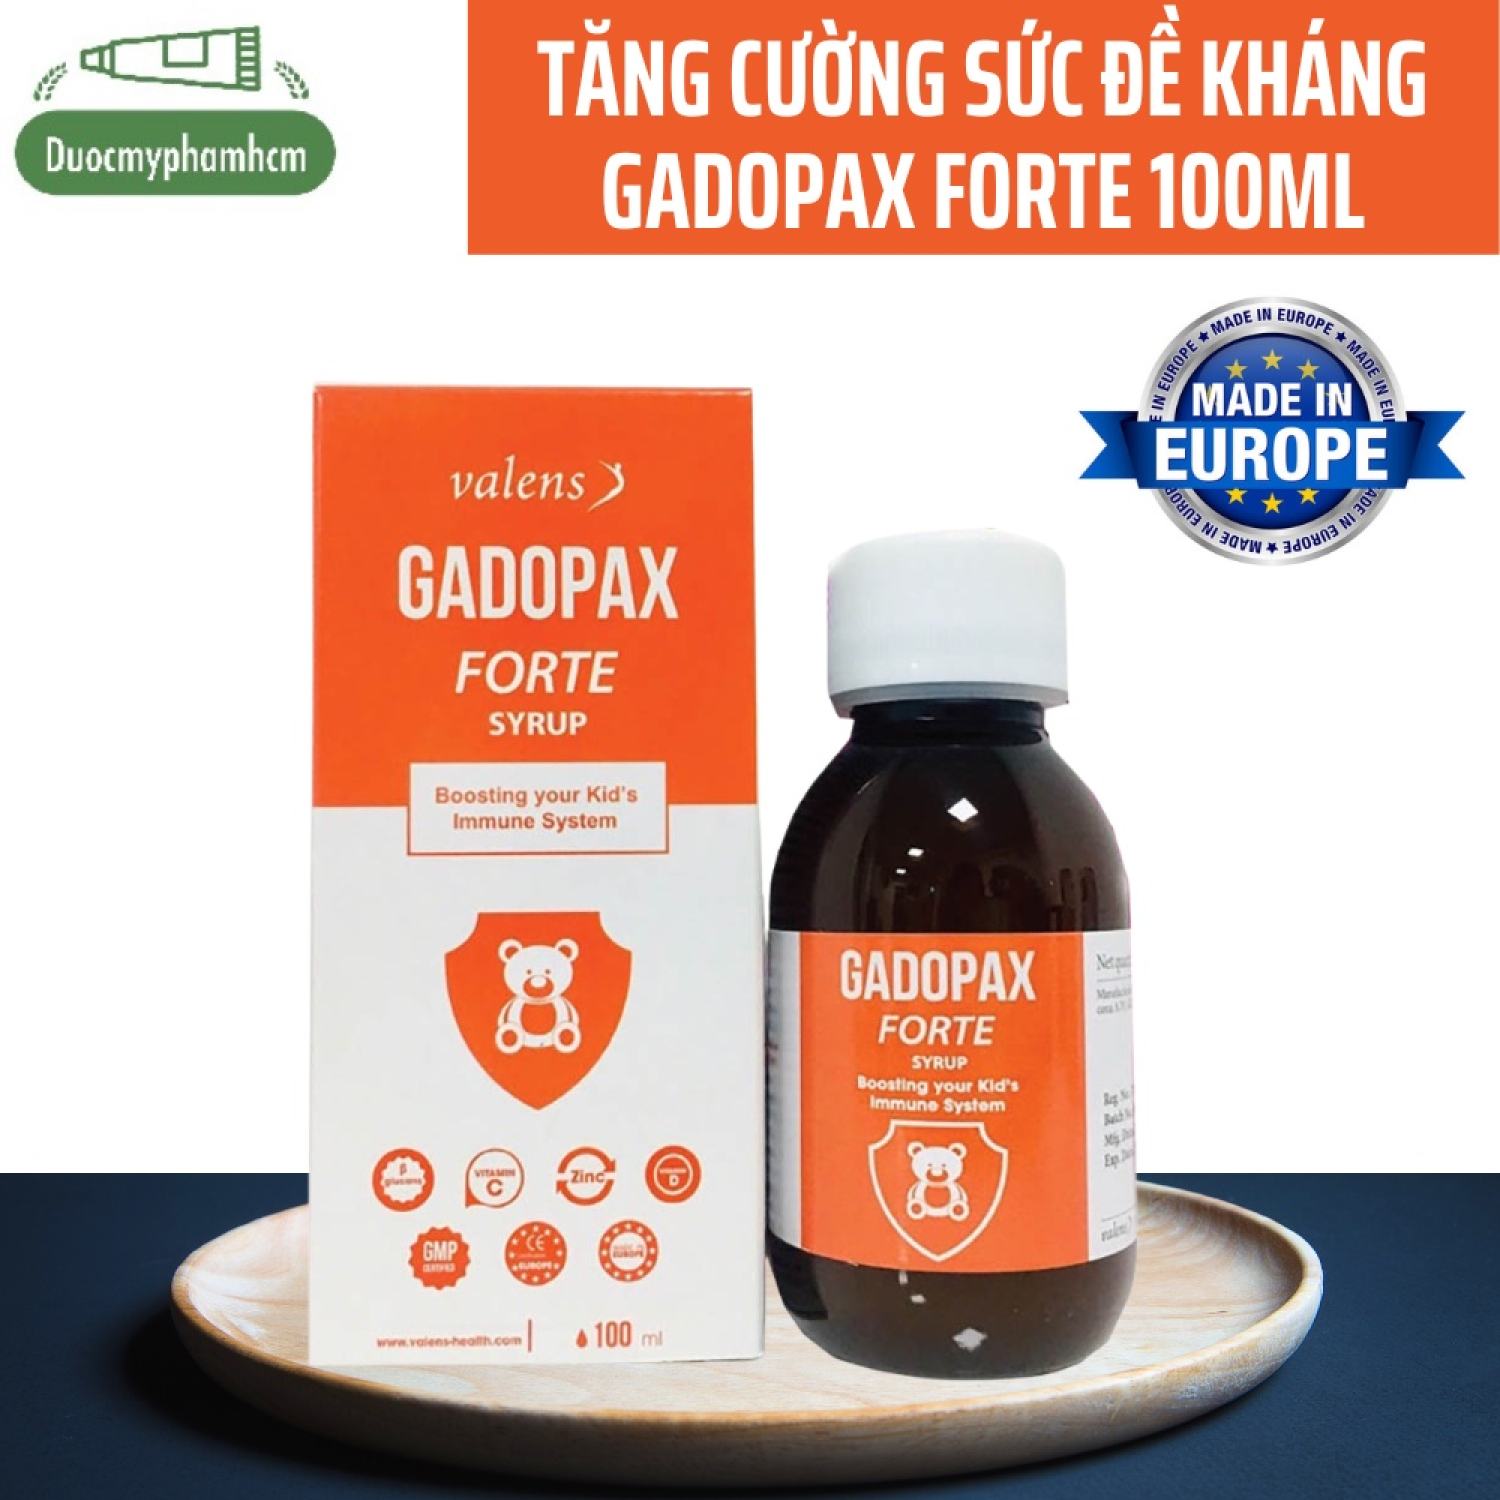 Gadopax f rte - Hỗ trợ tăng cường sức đề kháng của cơ thể- chai 100ml-